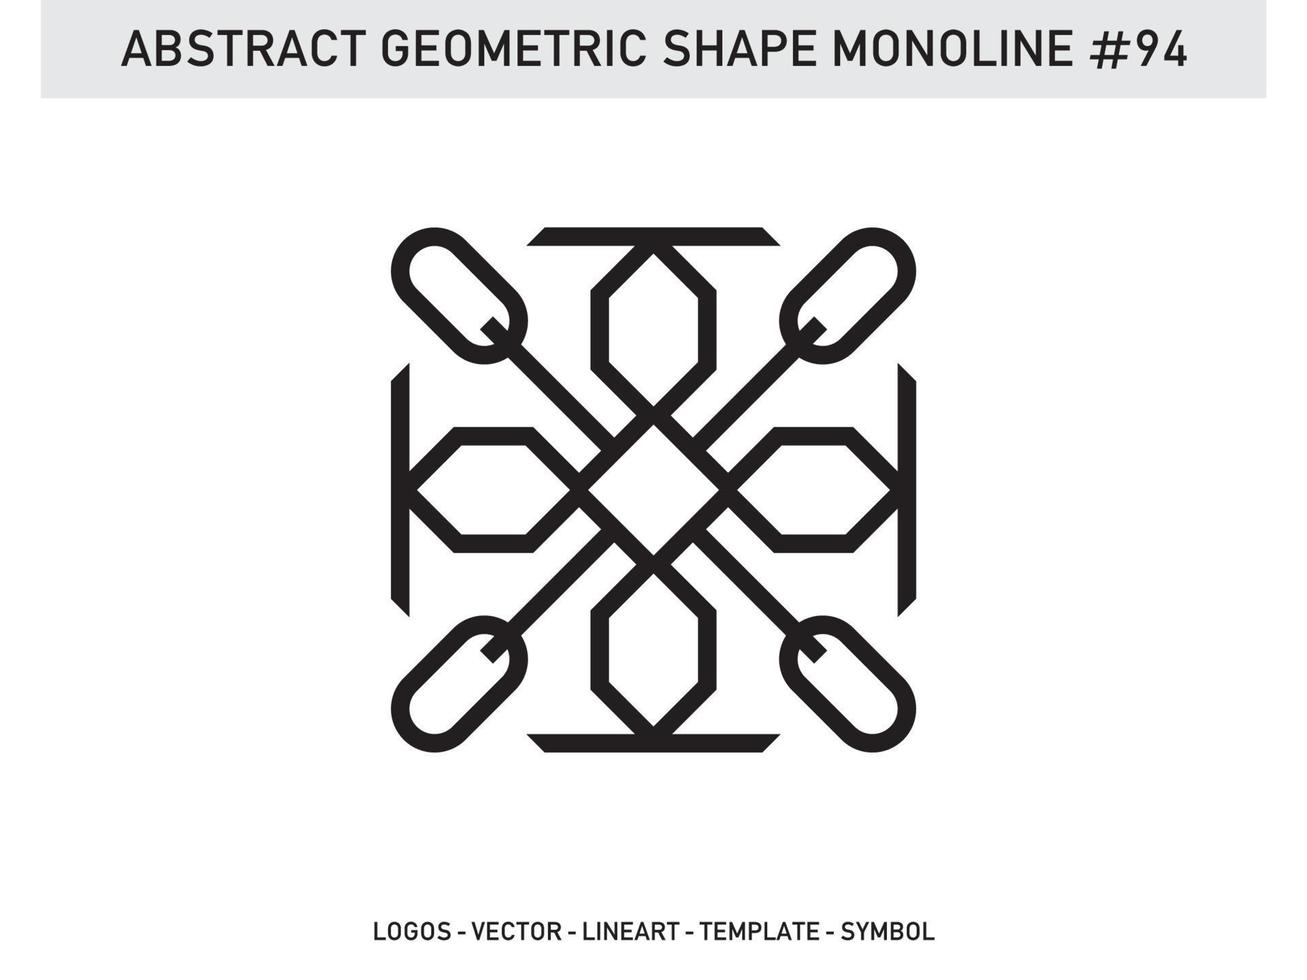 lineart geométrico línea forma monoline resumen vector diseño libre